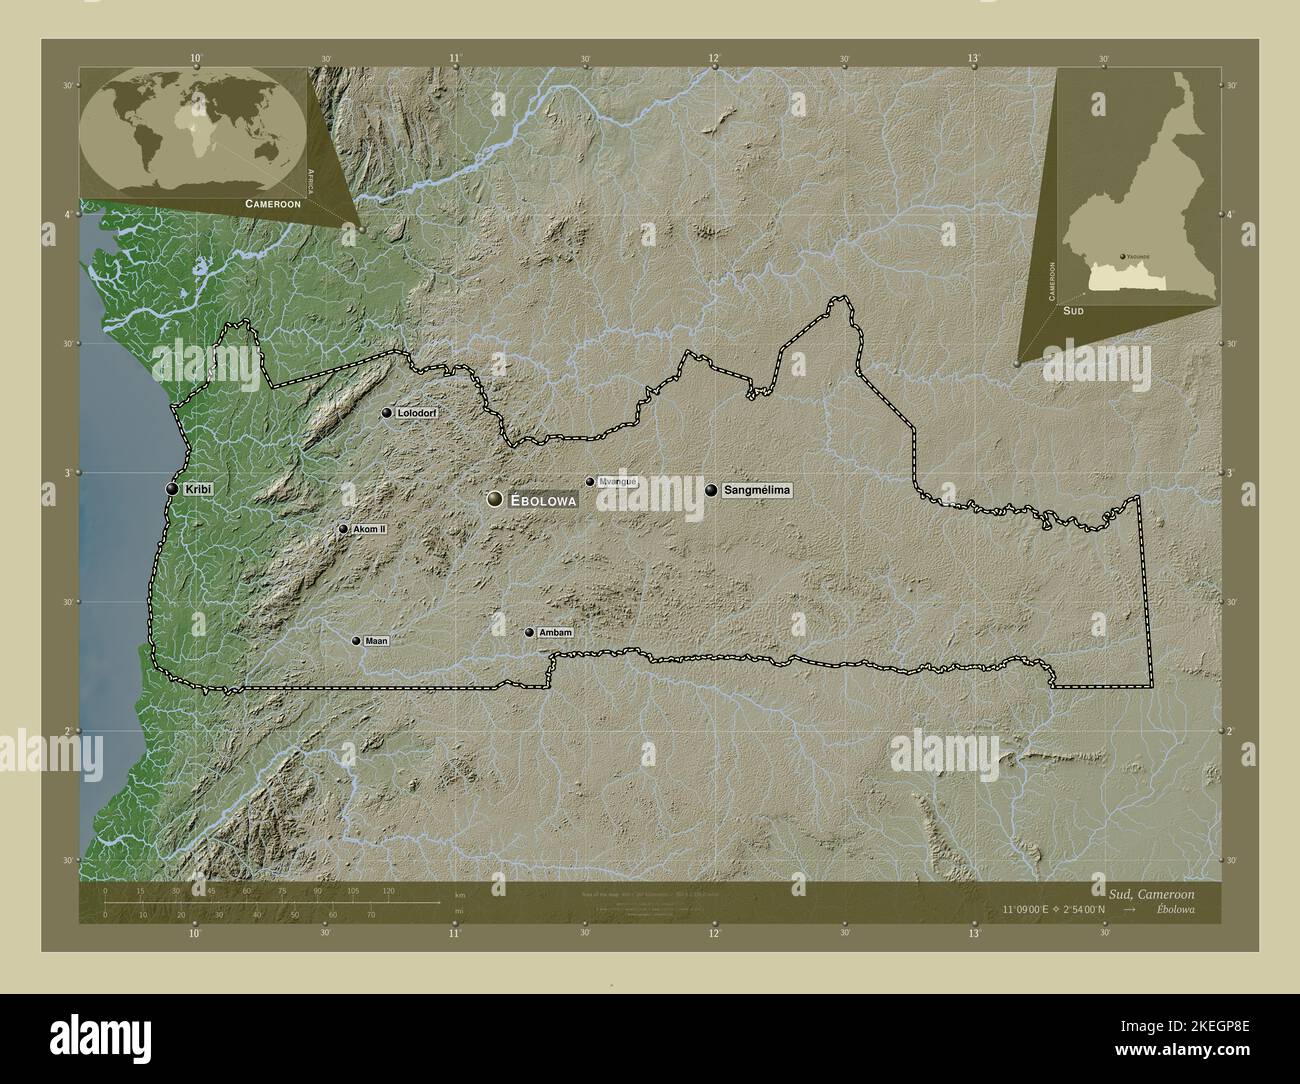 Sud, région du Cameroun. Carte d'altitude colorée en style wiki avec lacs et rivières. Lieux et noms des principales villes de la région. Auxiliaire d'angle Banque D'Images